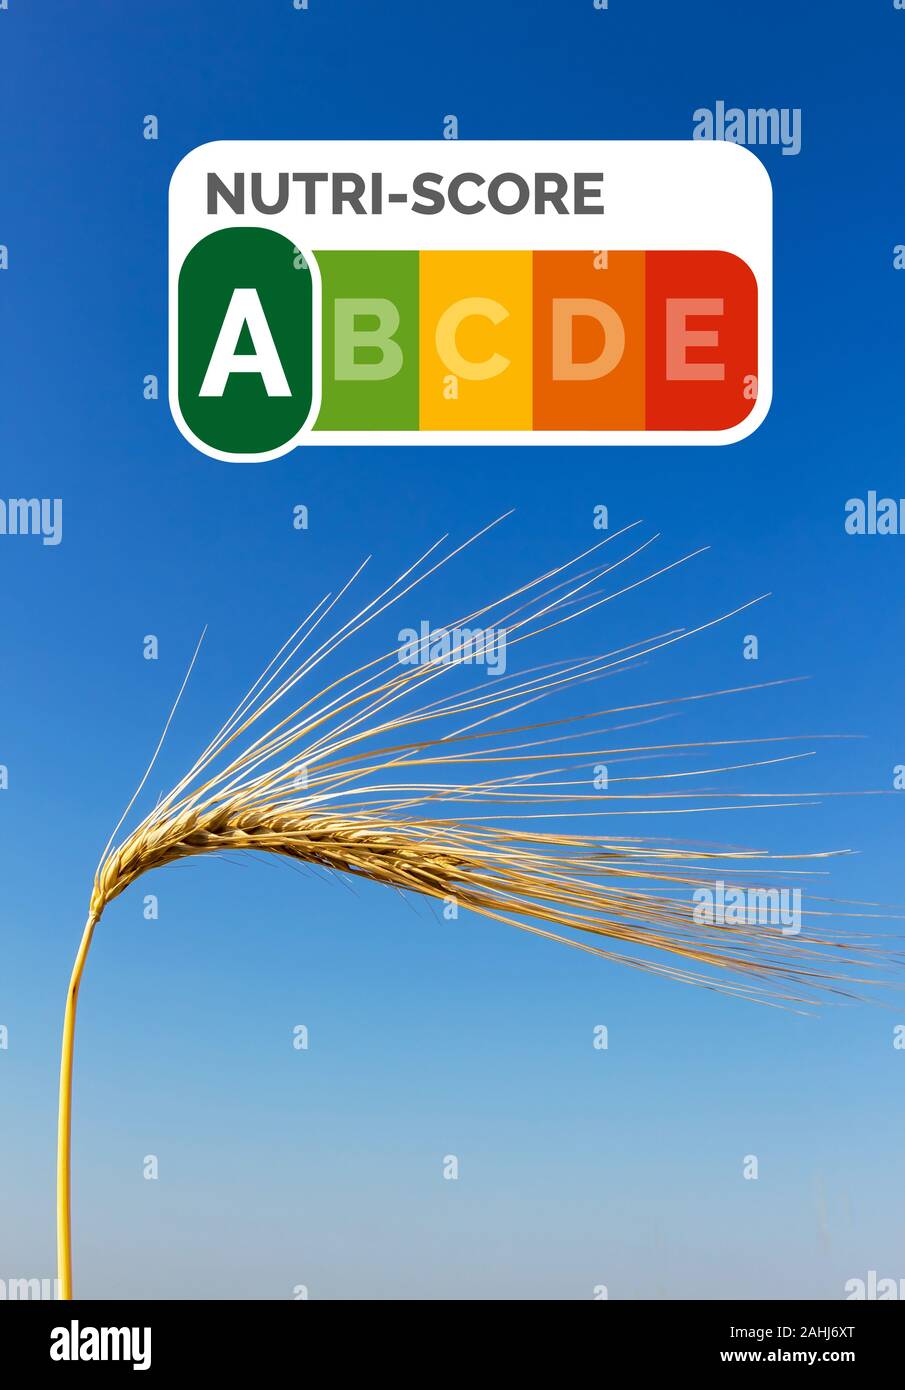 Ein Getreidefeld mit Gerste wartet auf die Ernte. Symbolfoto für Landwirtschaft und gesunde Ernährung. Einzelne Ähre, blauer Himmel, Nutri-Score Siege Stock Photo